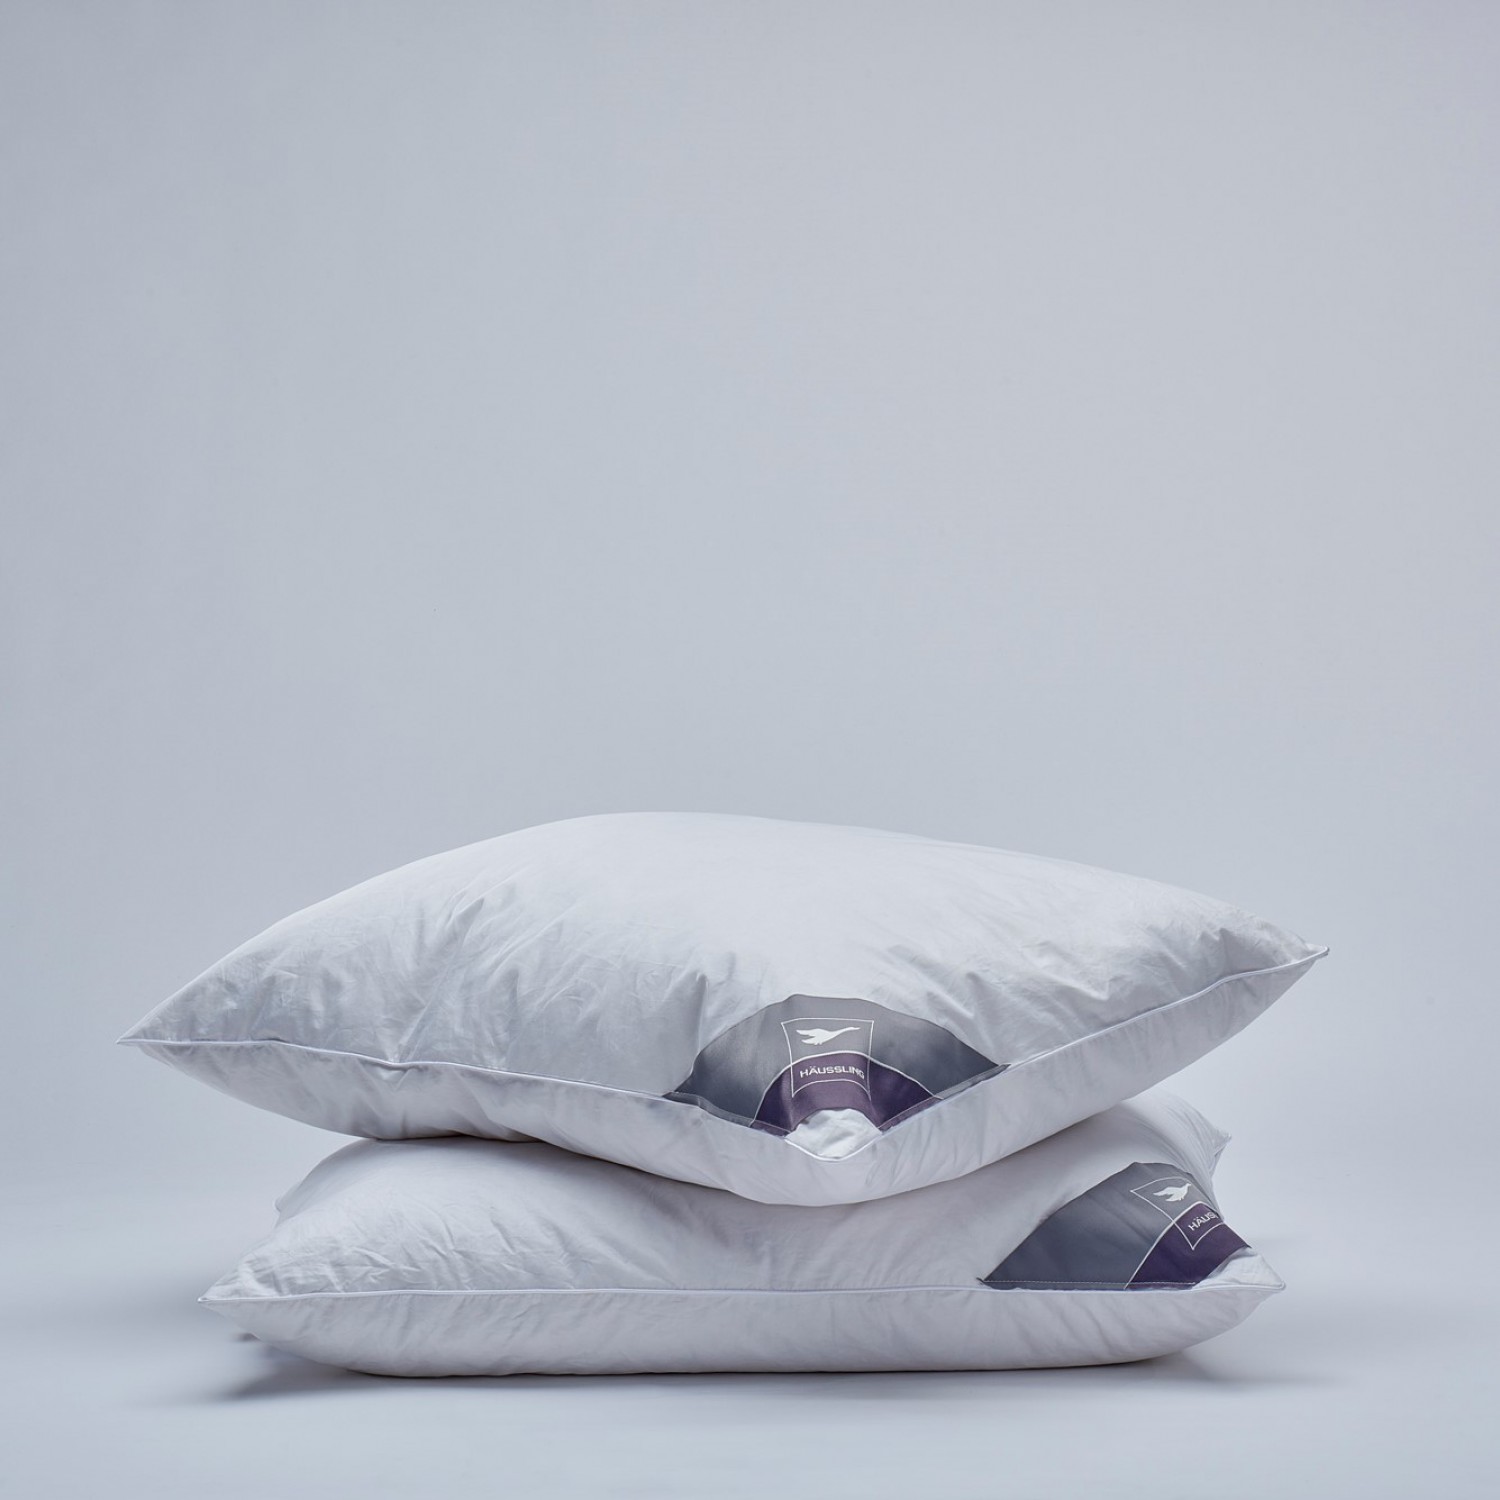 duvet/quilt 200x200 2 pillows 80x80cm Wool bedding set 